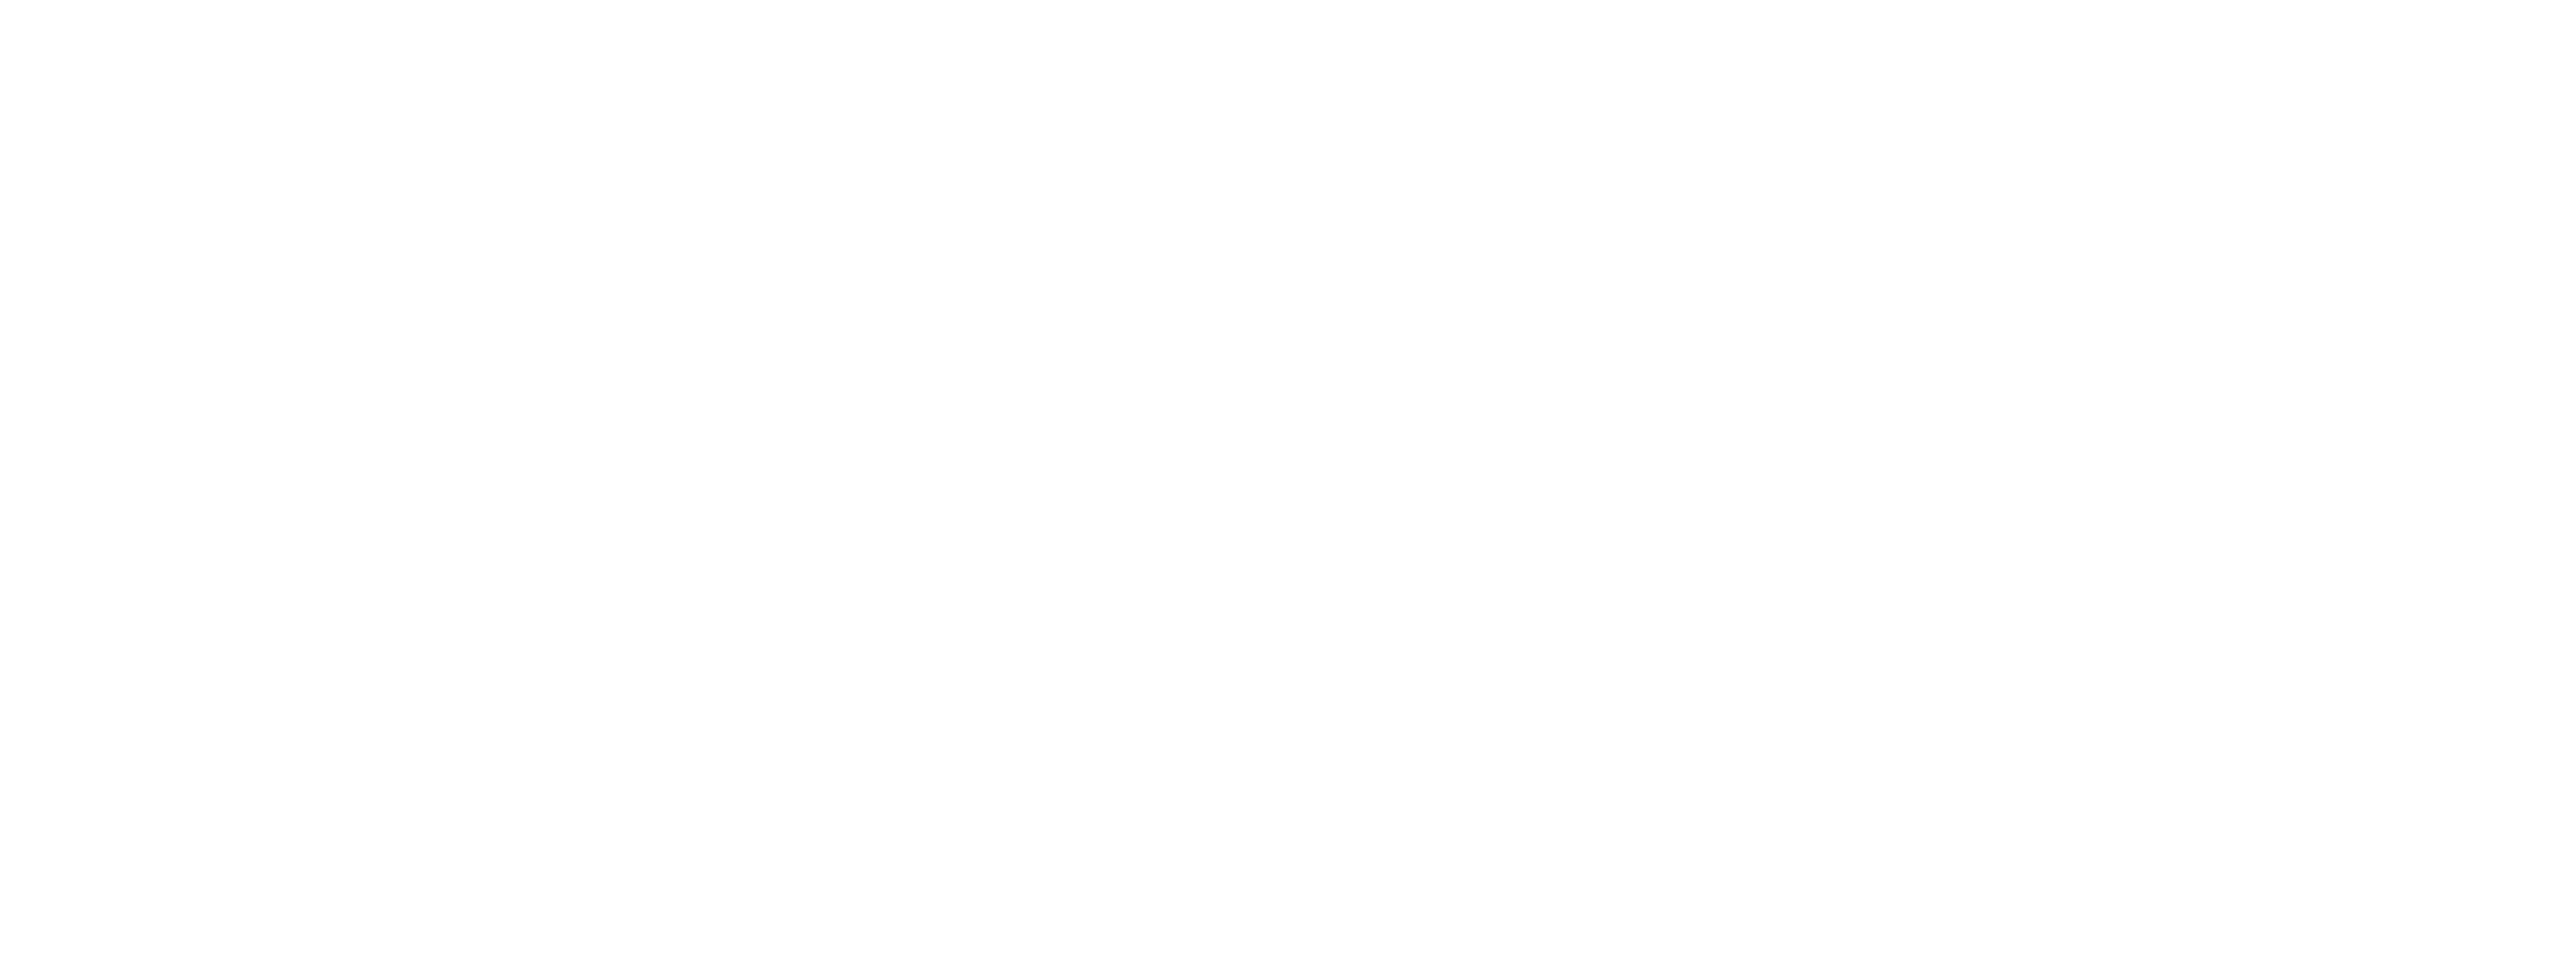 pipp-hort-logo175